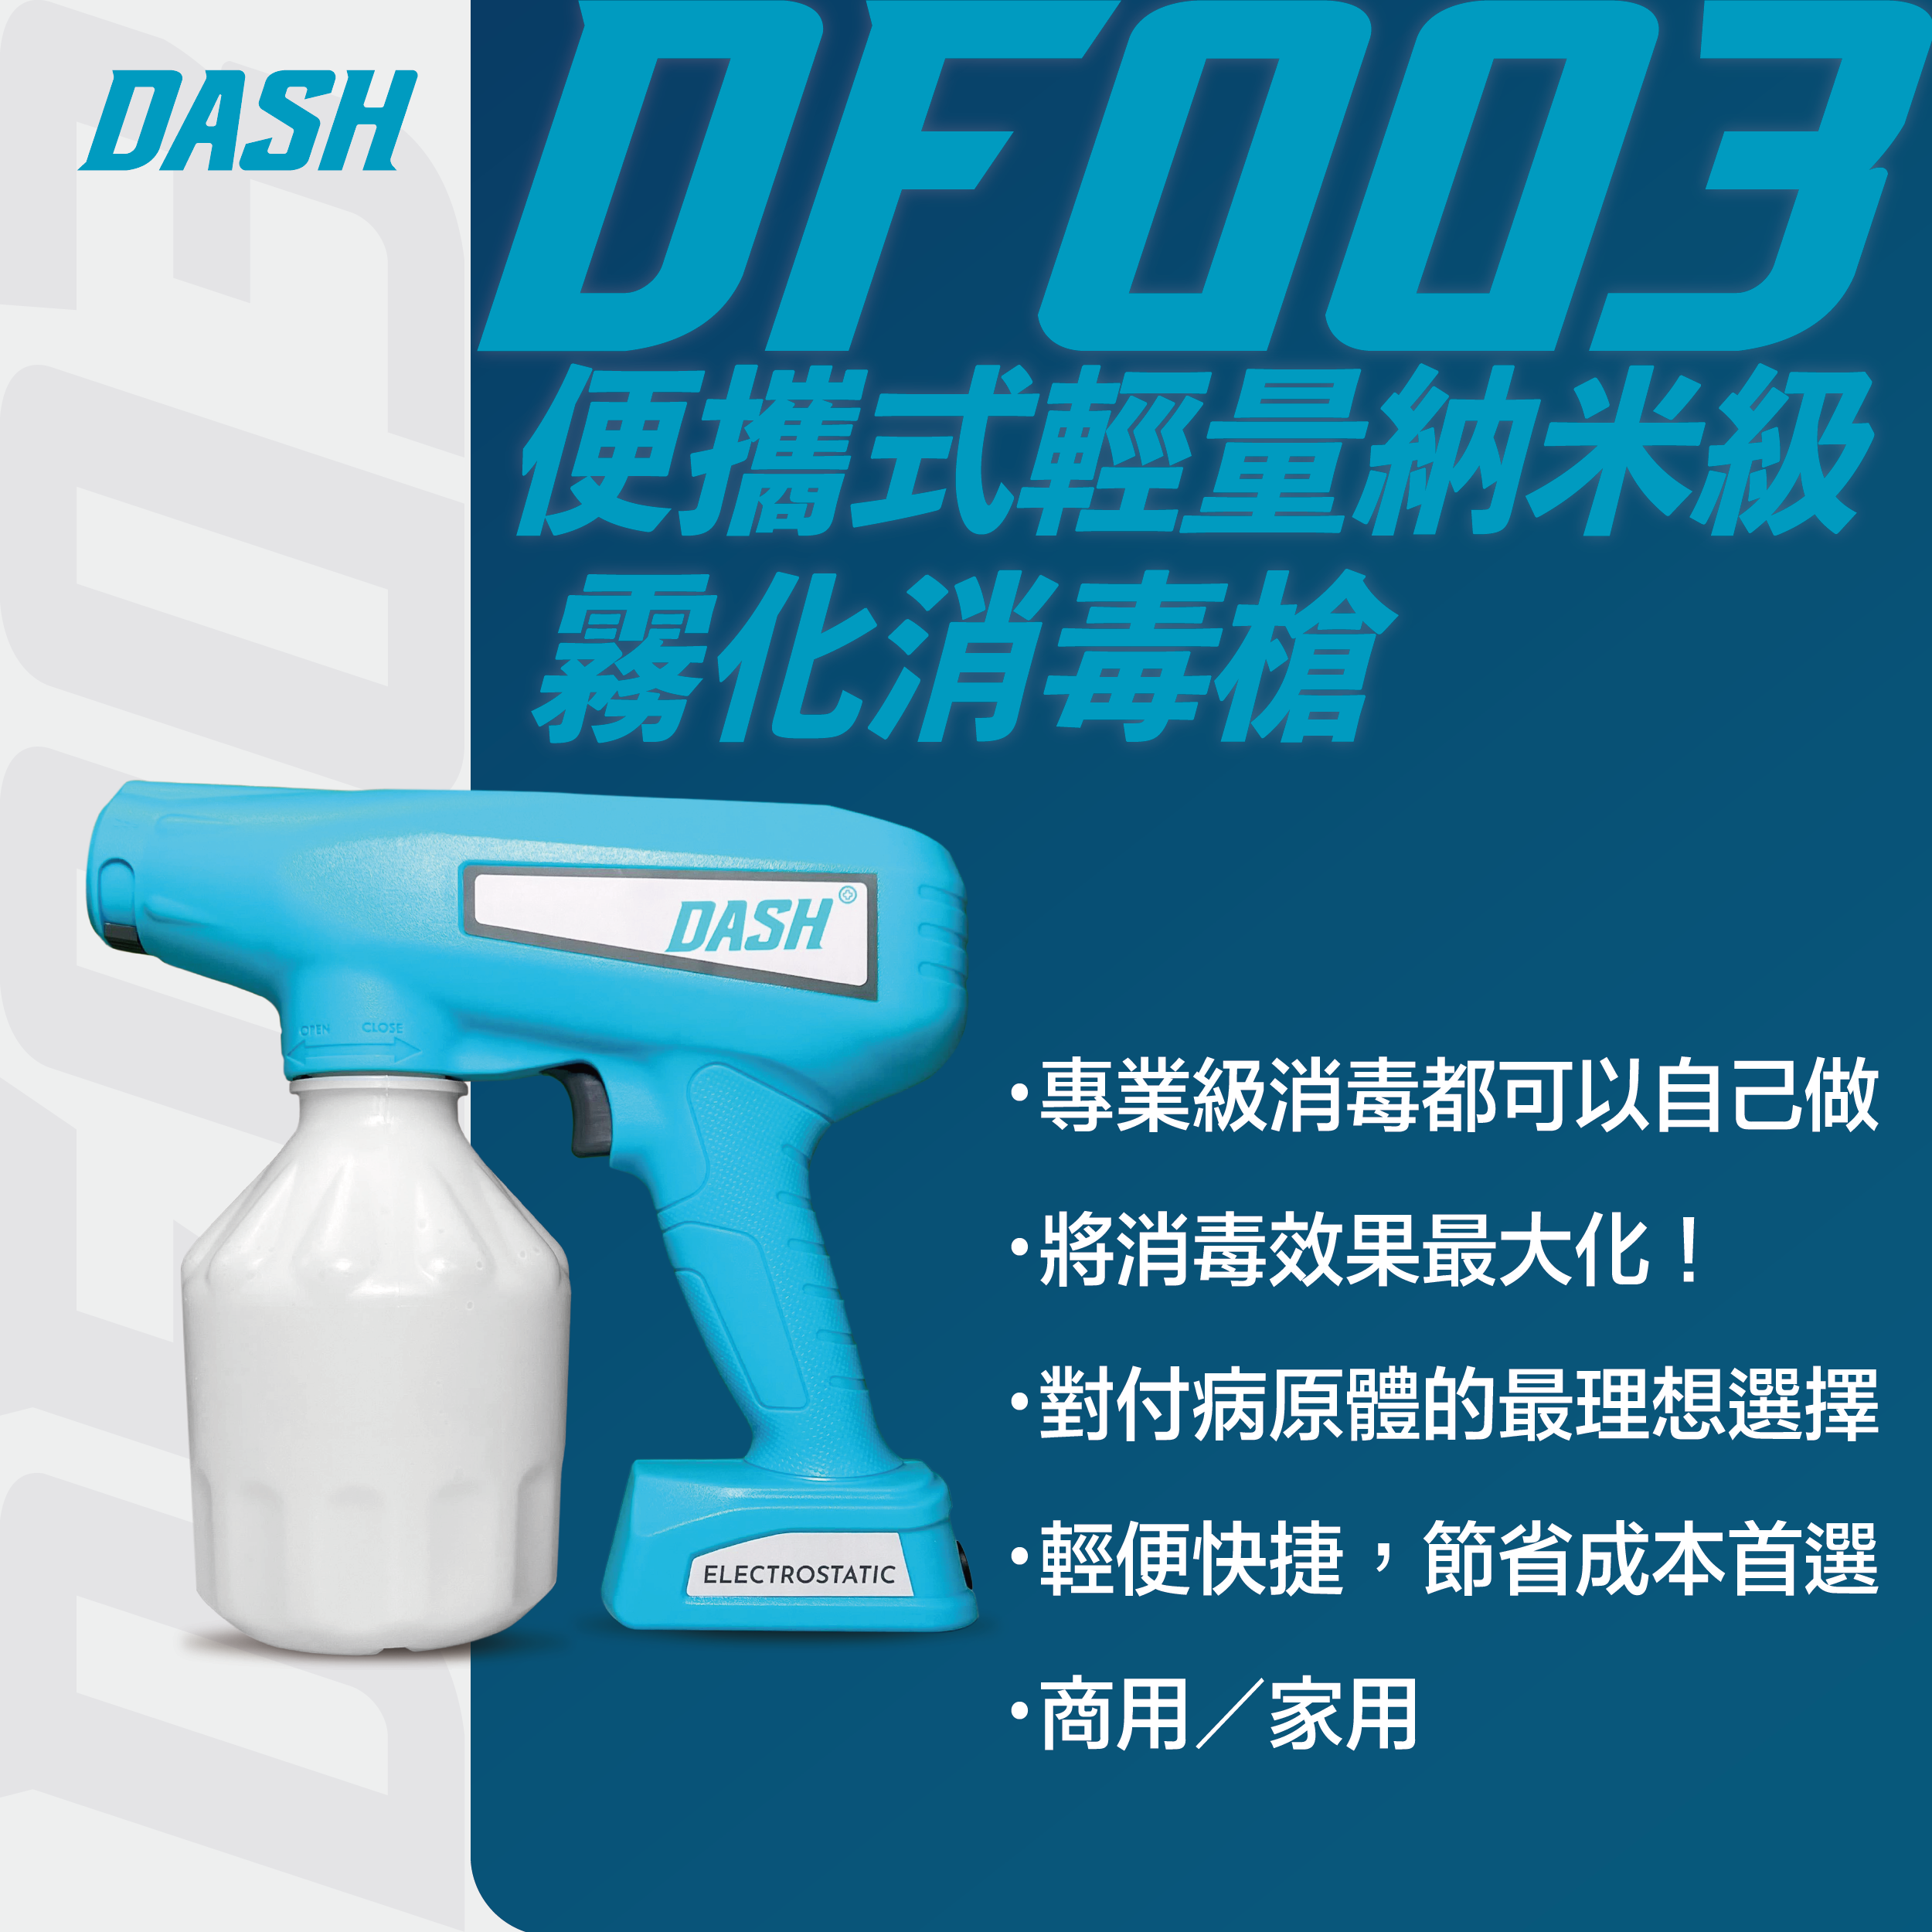 DASH DF003 Household Grade Particle Disinfection Gun